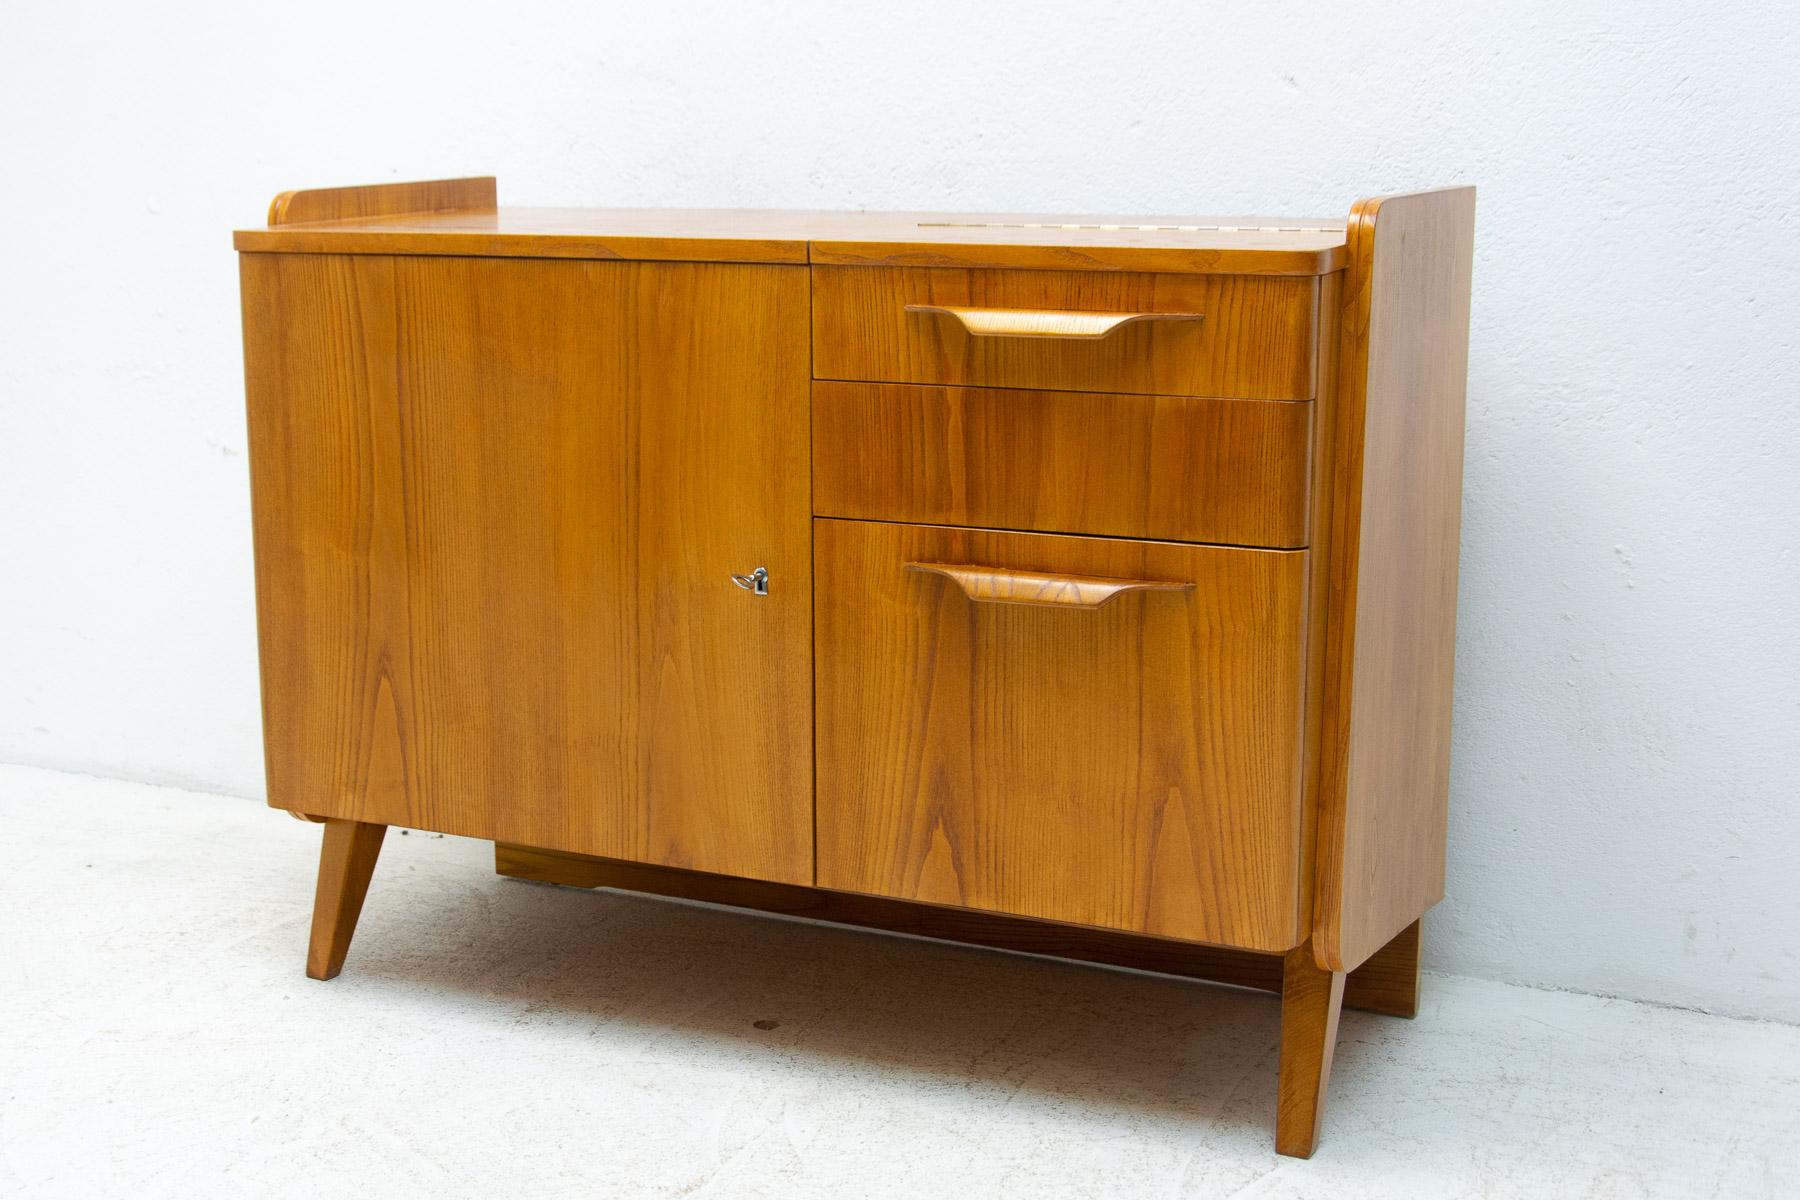 Petit meuble ou table de télévision Vintage By des années 1960. Il a été conçu par František Jirák et fabriqué par la société Tatra nábytok dans l'ancienne Tchécoslovaquie. Placage de noyer, contreplaqué. En bon état.

Hauteur : 79 cm

largeur : 106